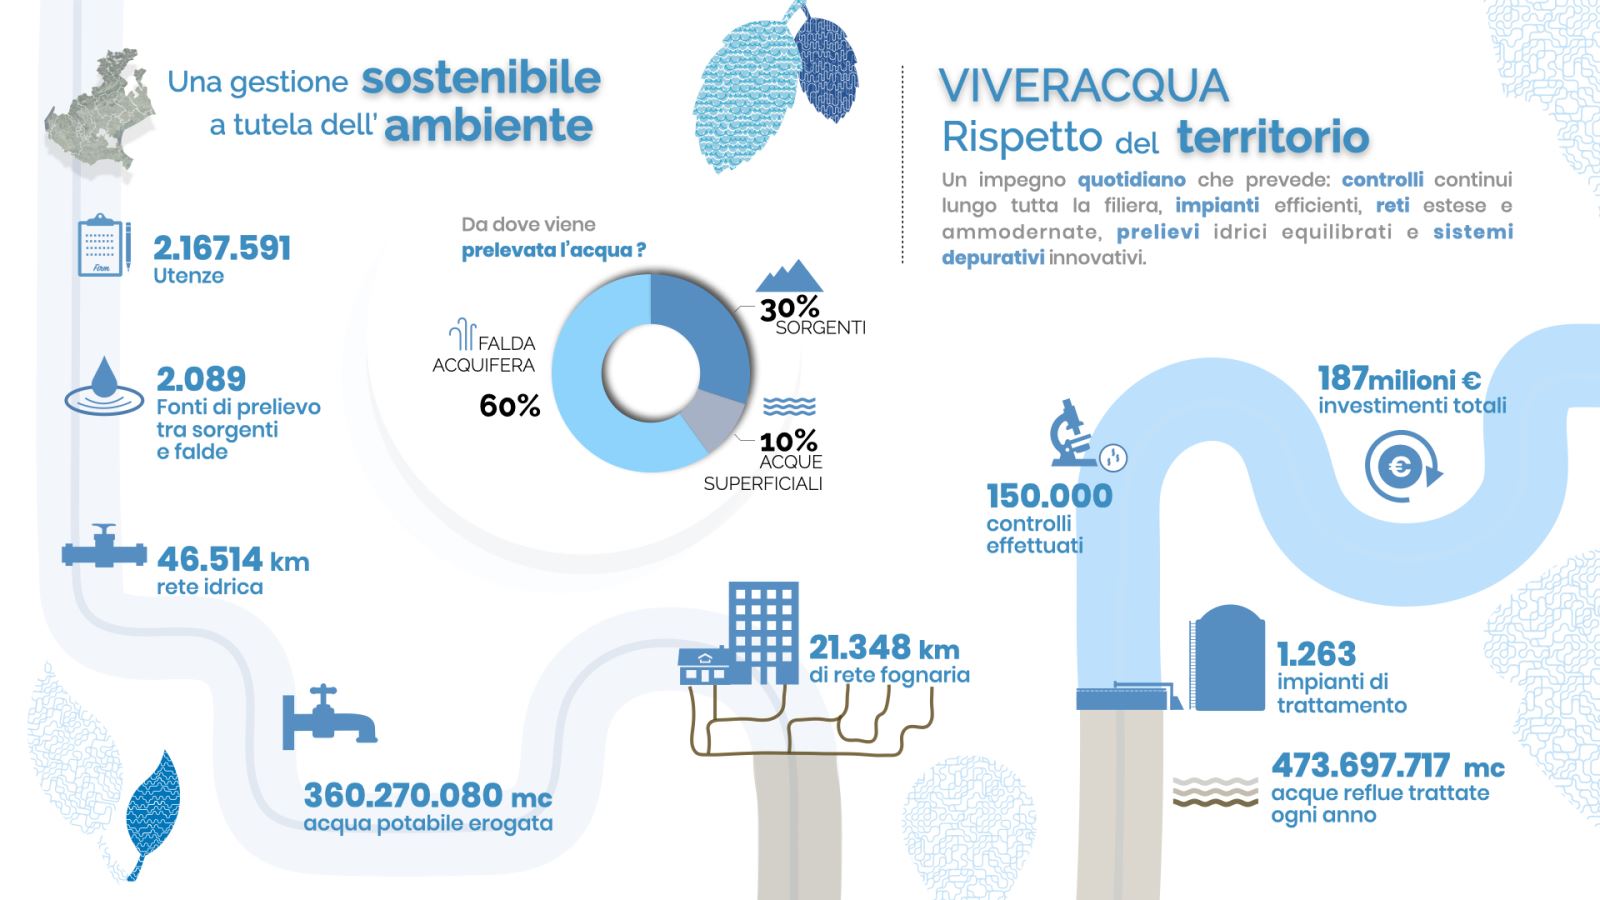 Viveracqua, 187 milioni di euro investiti in un anno per la gestione sostenibile della risorsa idrica